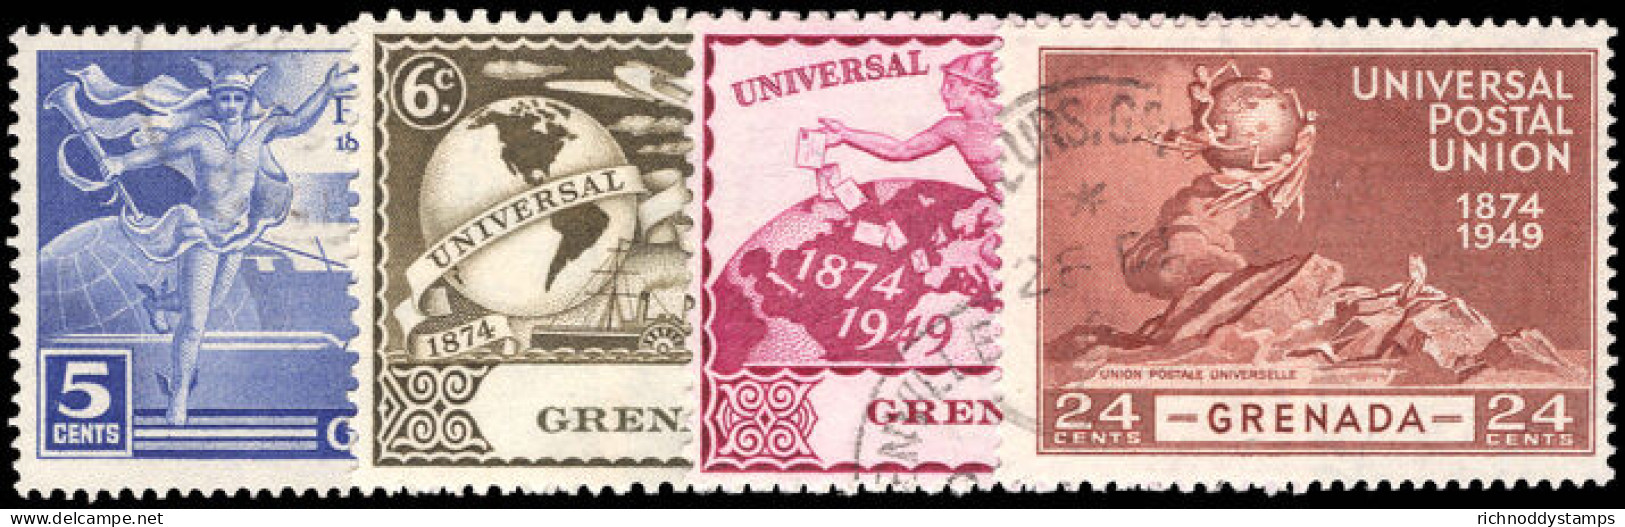 Grenada 1949 UPU Fine Used. - Granada (...-1974)